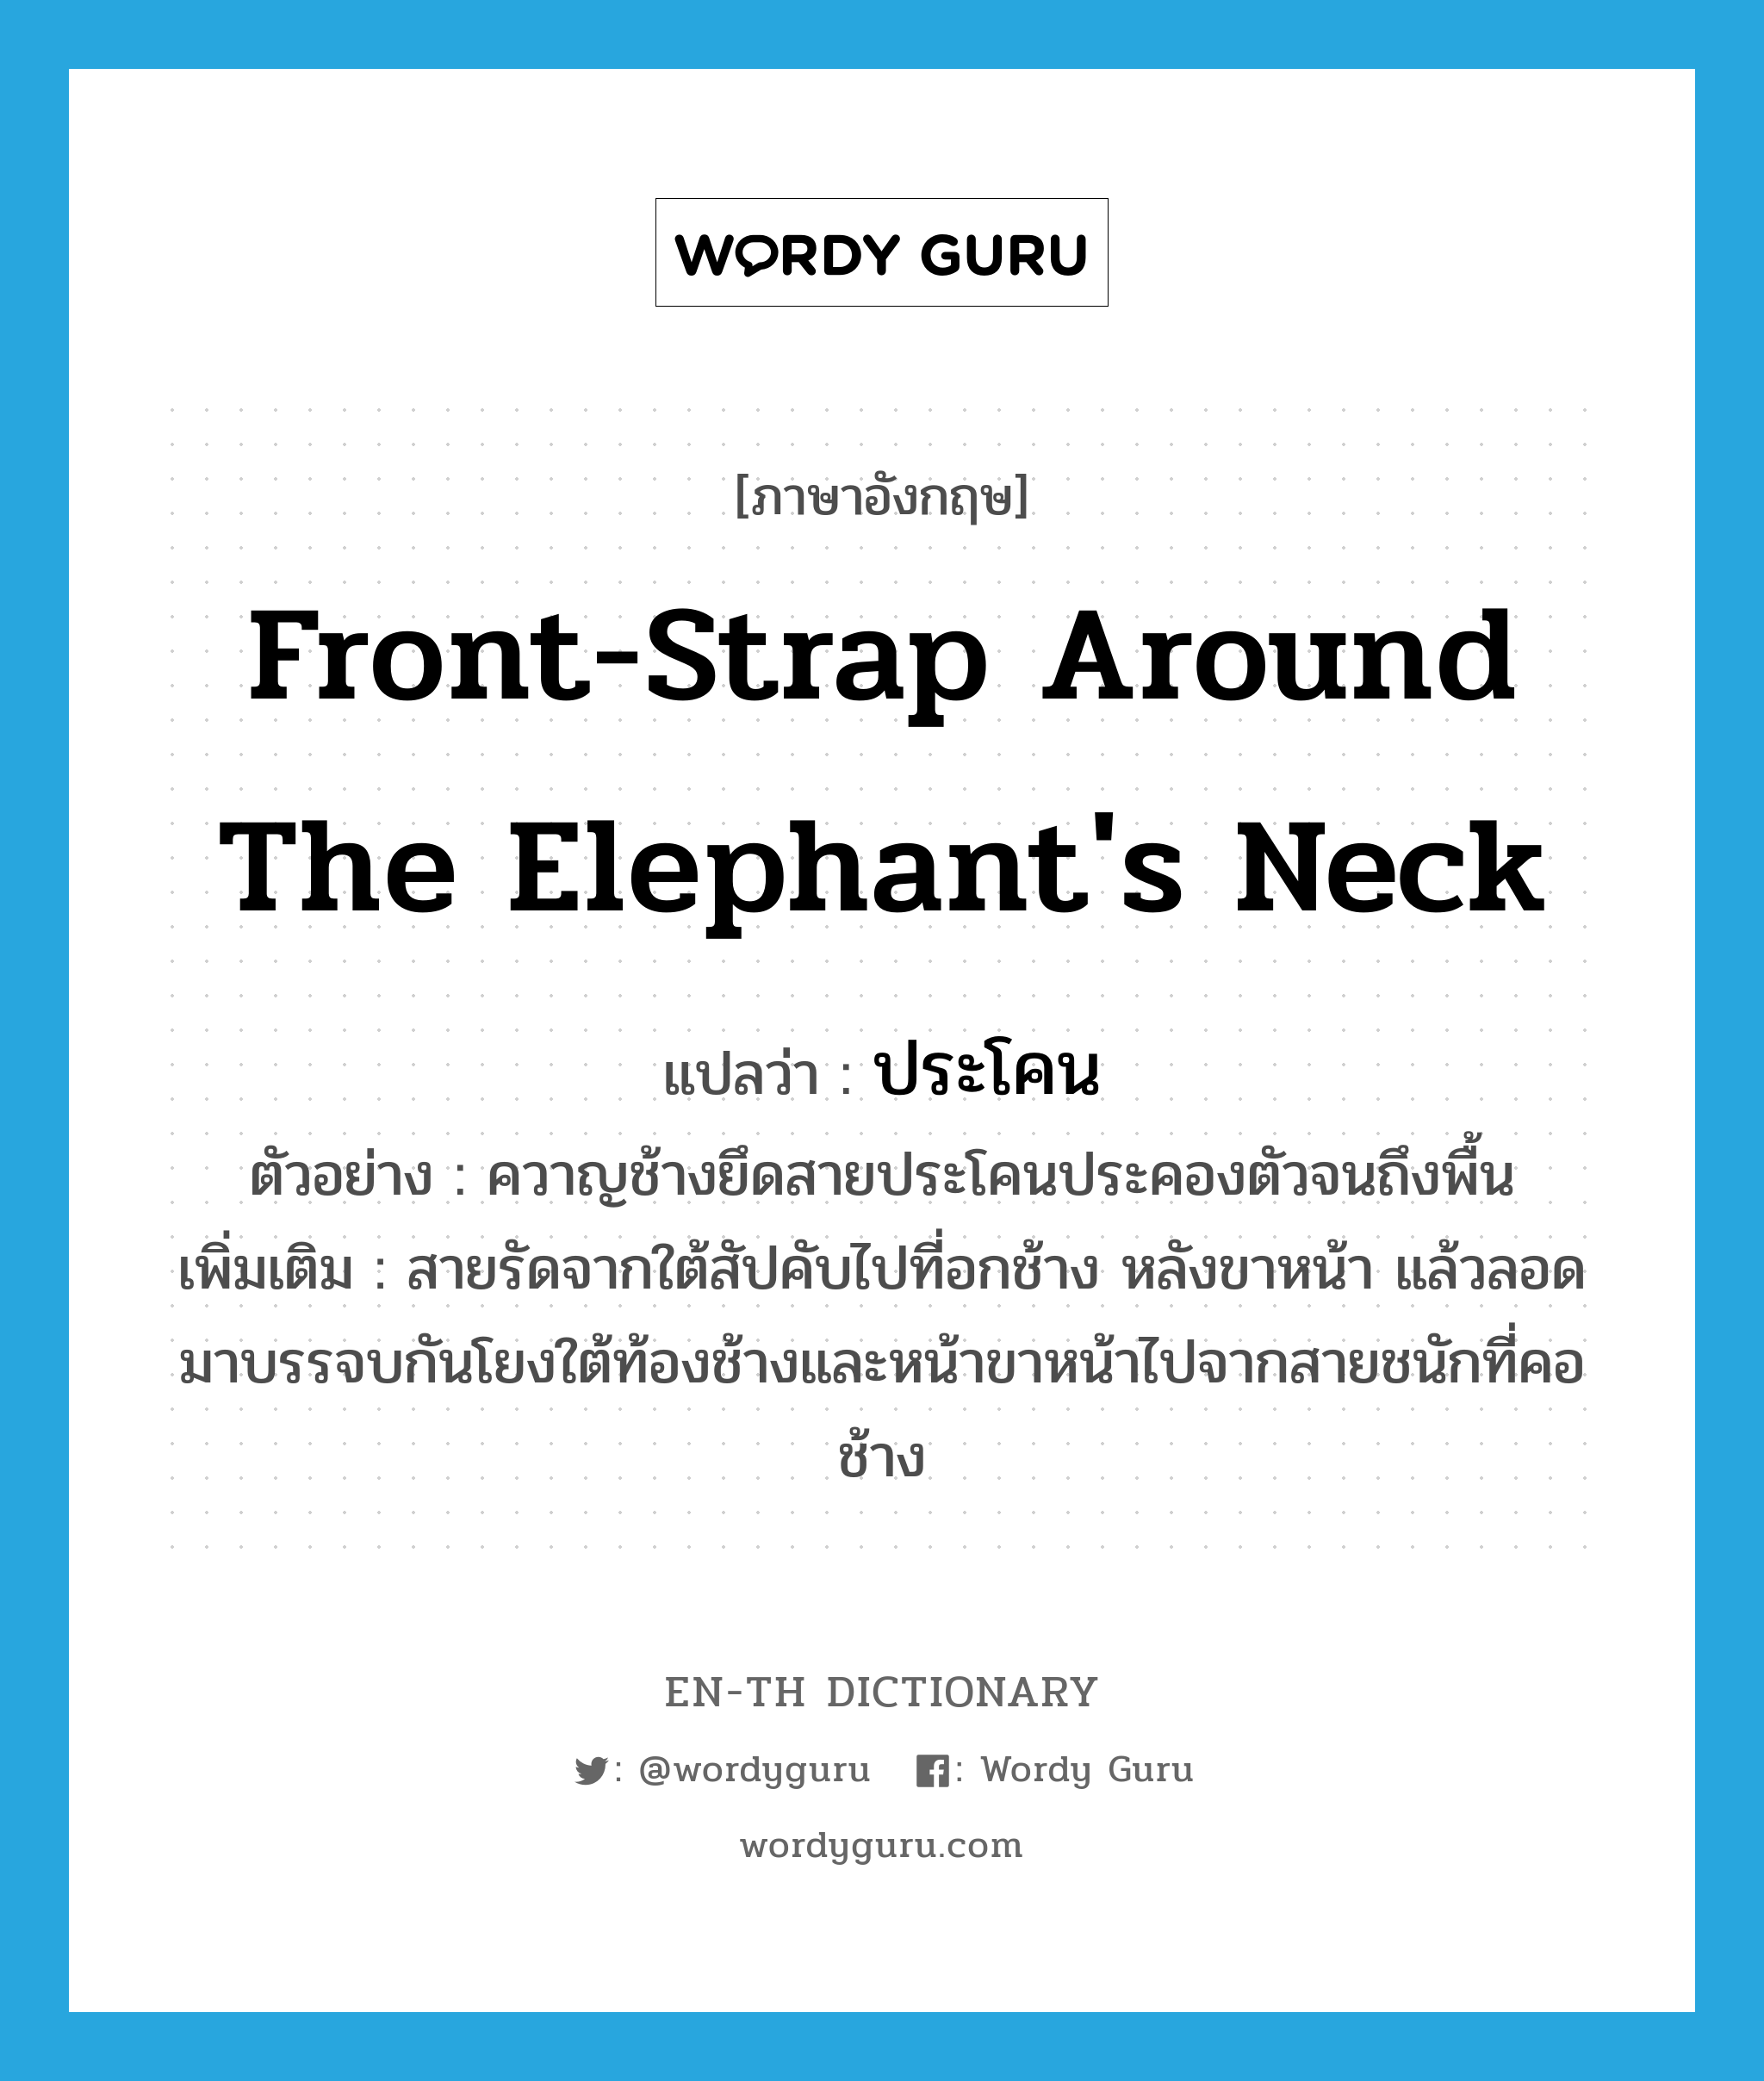 ประโคน ภาษาอังกฤษ?, คำศัพท์ภาษาอังกฤษ ประโคน แปลว่า front-strap around the elephant's neck ประเภท N ตัวอย่าง ควาญช้างยึดสายประโคนประคองตัวจนถึงพื้น เพิ่มเติม สายรัดจากใต้สัปคับไปที่อกช้าง หลังขาหน้า แล้วลอดมาบรรจบกันโยงใต้ท้องช้างและหน้าขาหน้าไปจากสายชนักที่คอช้าง หมวด N